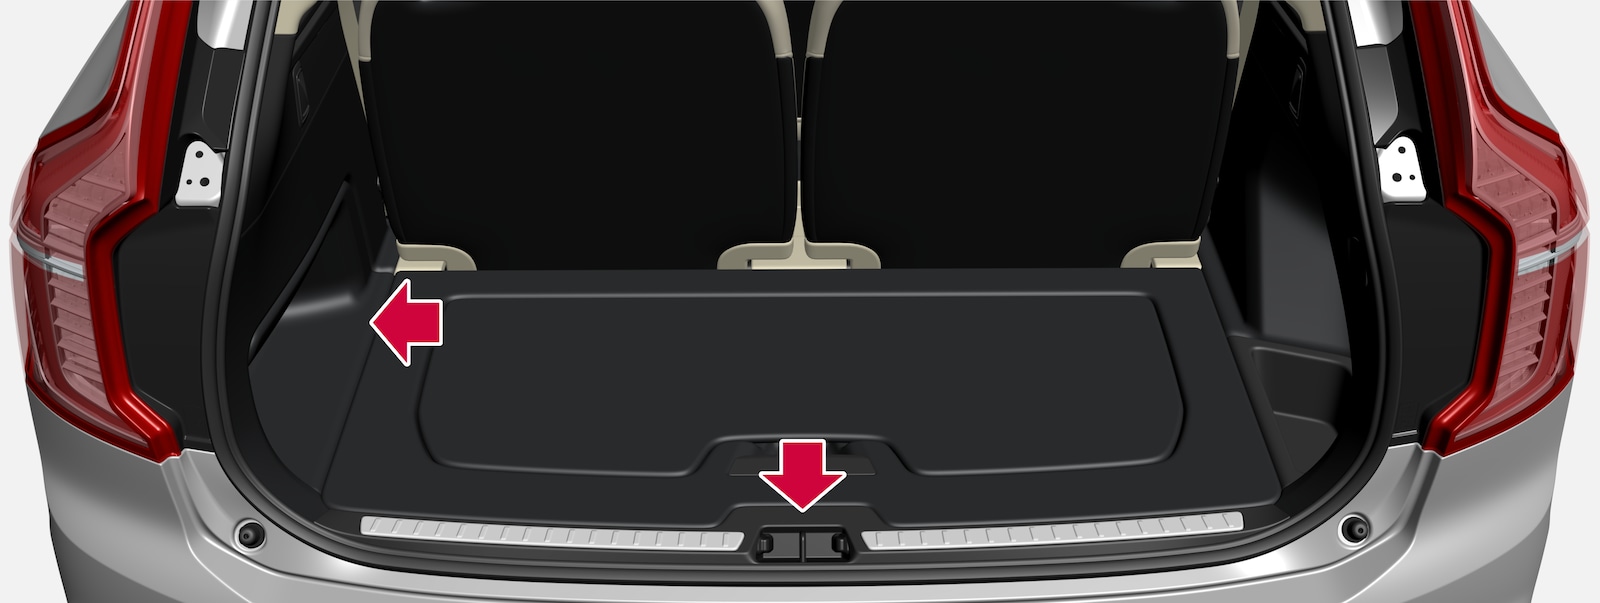 VENYAA Voiture Étagère Coffre Arrière Rétractable pour Volvo XC90